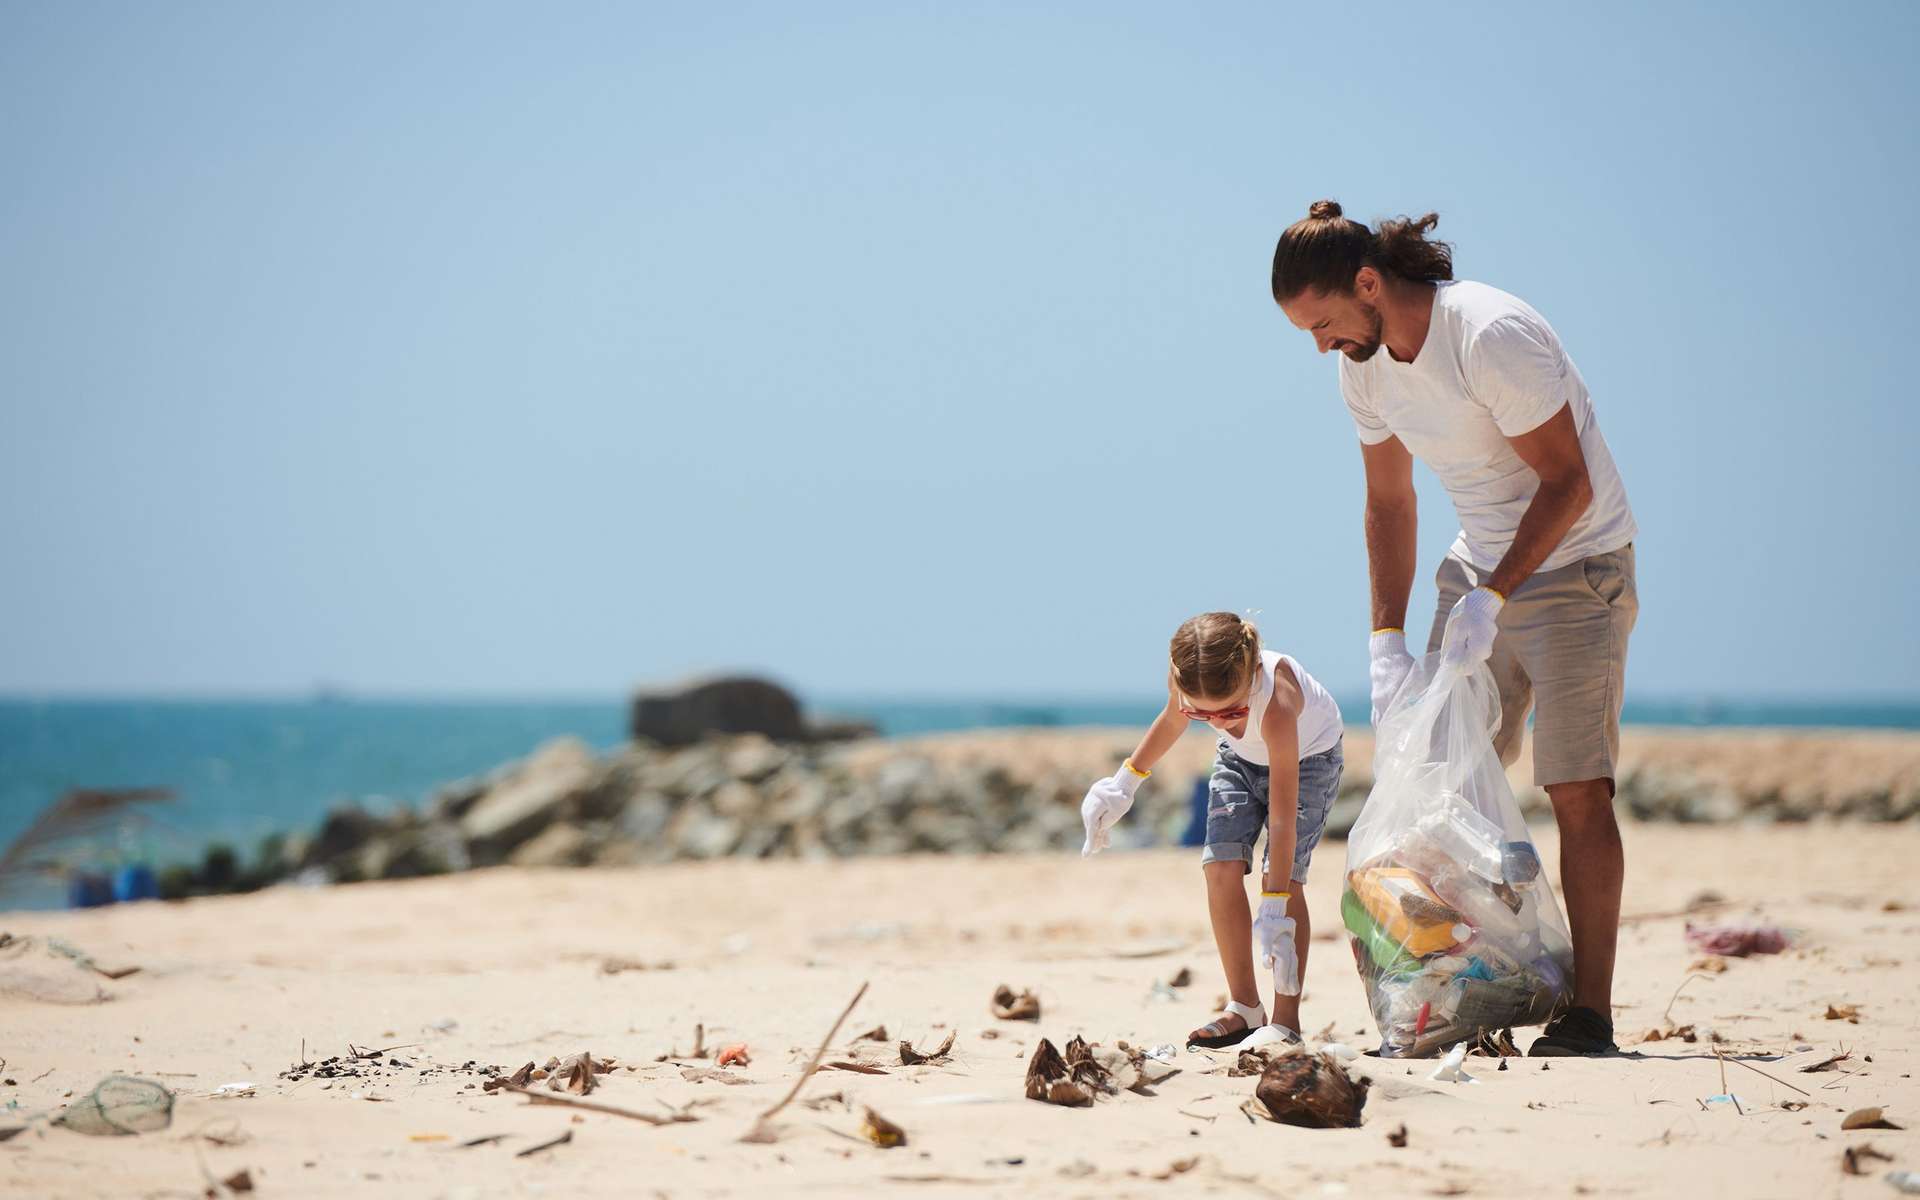 Comment participer à l'opération « World Cleanup Day » pour ramasser des déchets près de chez vous ?